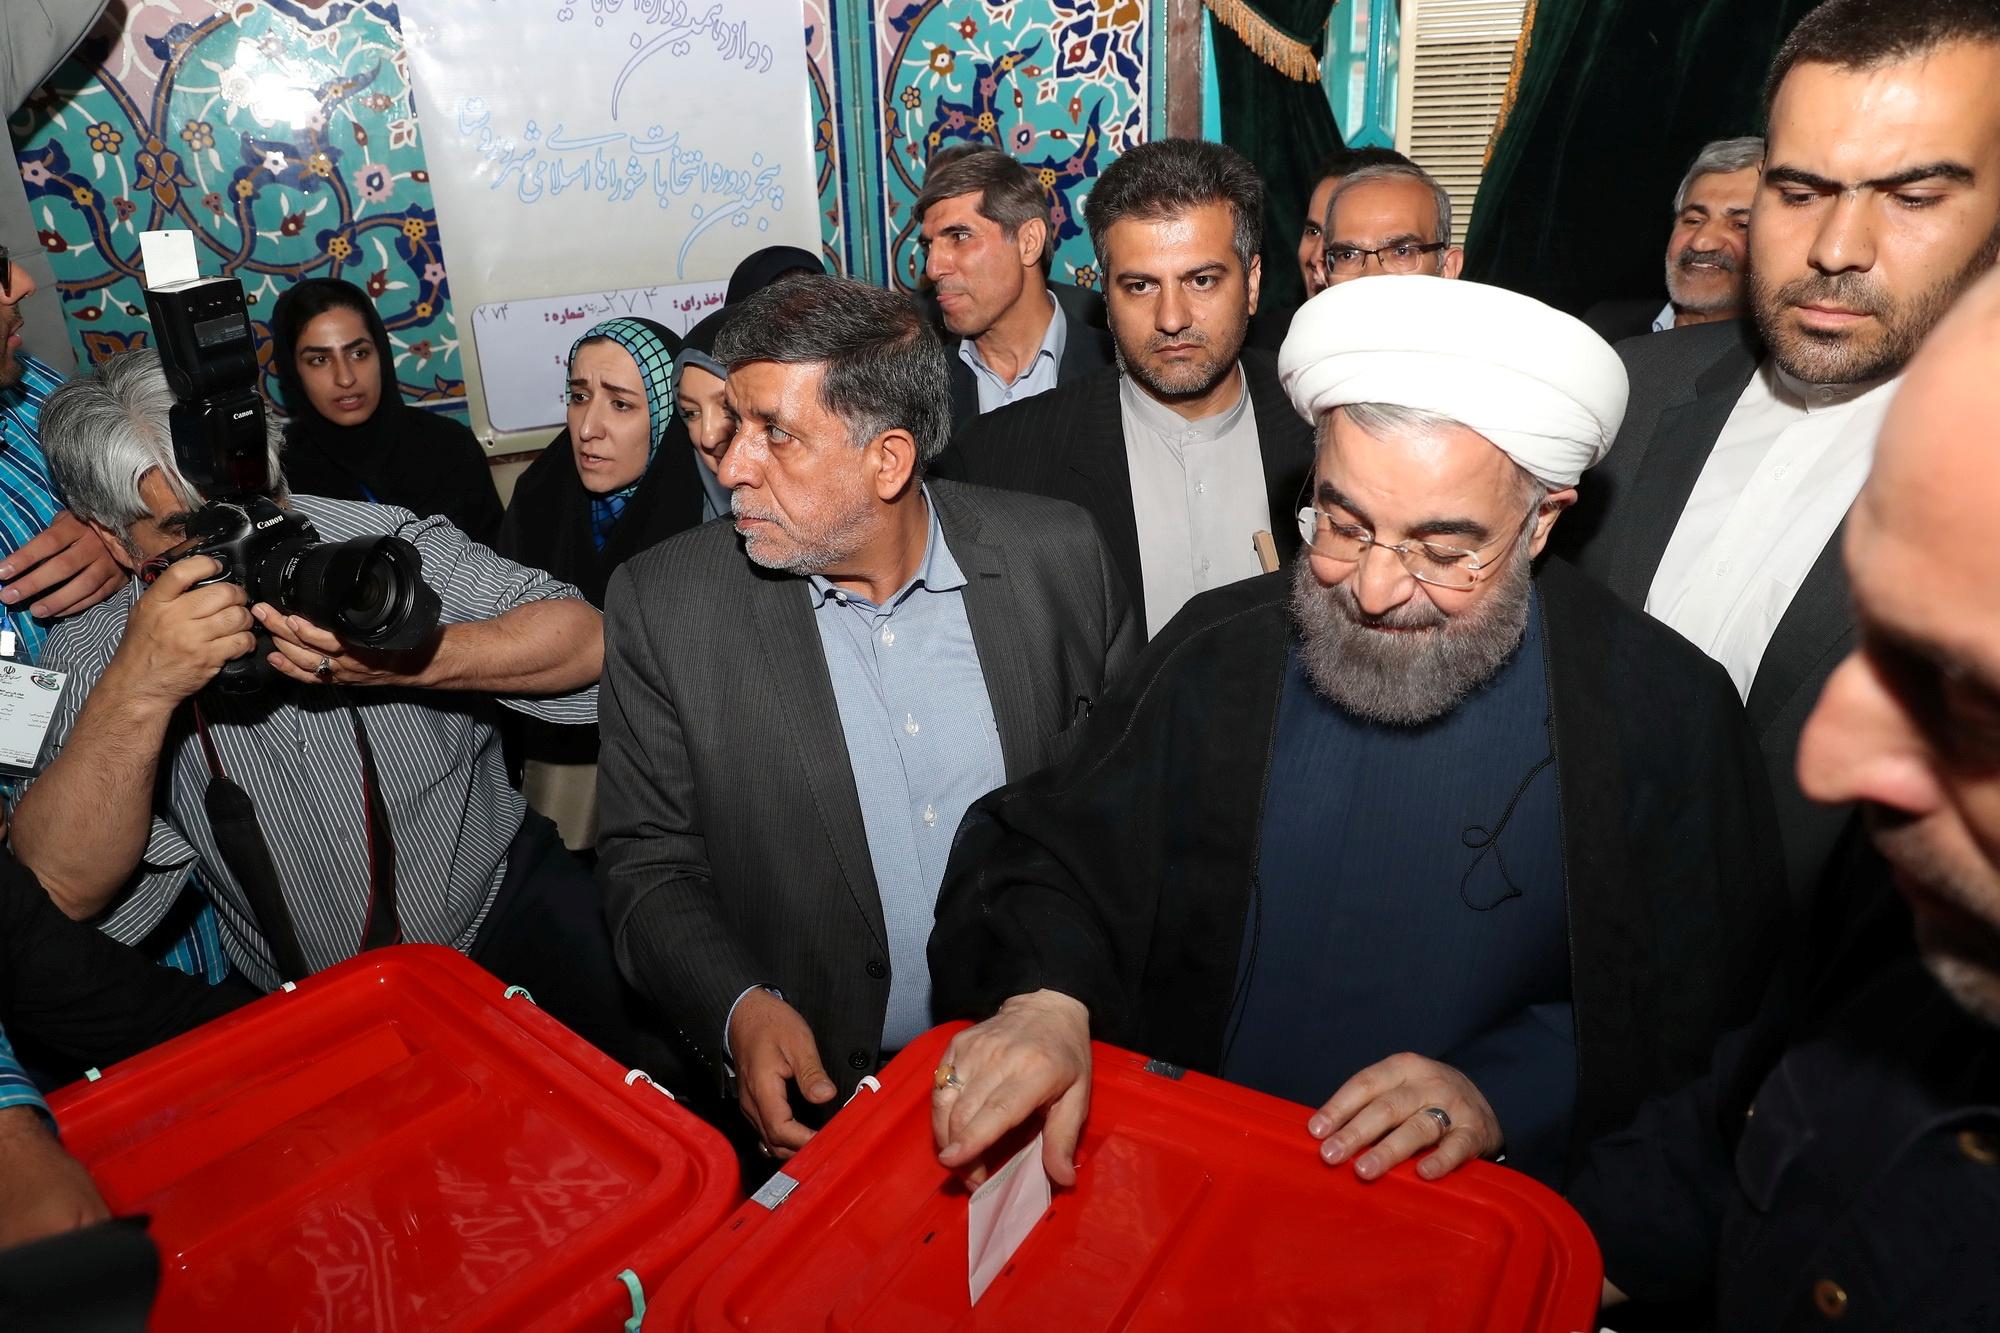 President Hassan Rouhani avgir sin stemme i det iranske valget i Tehran fredag.